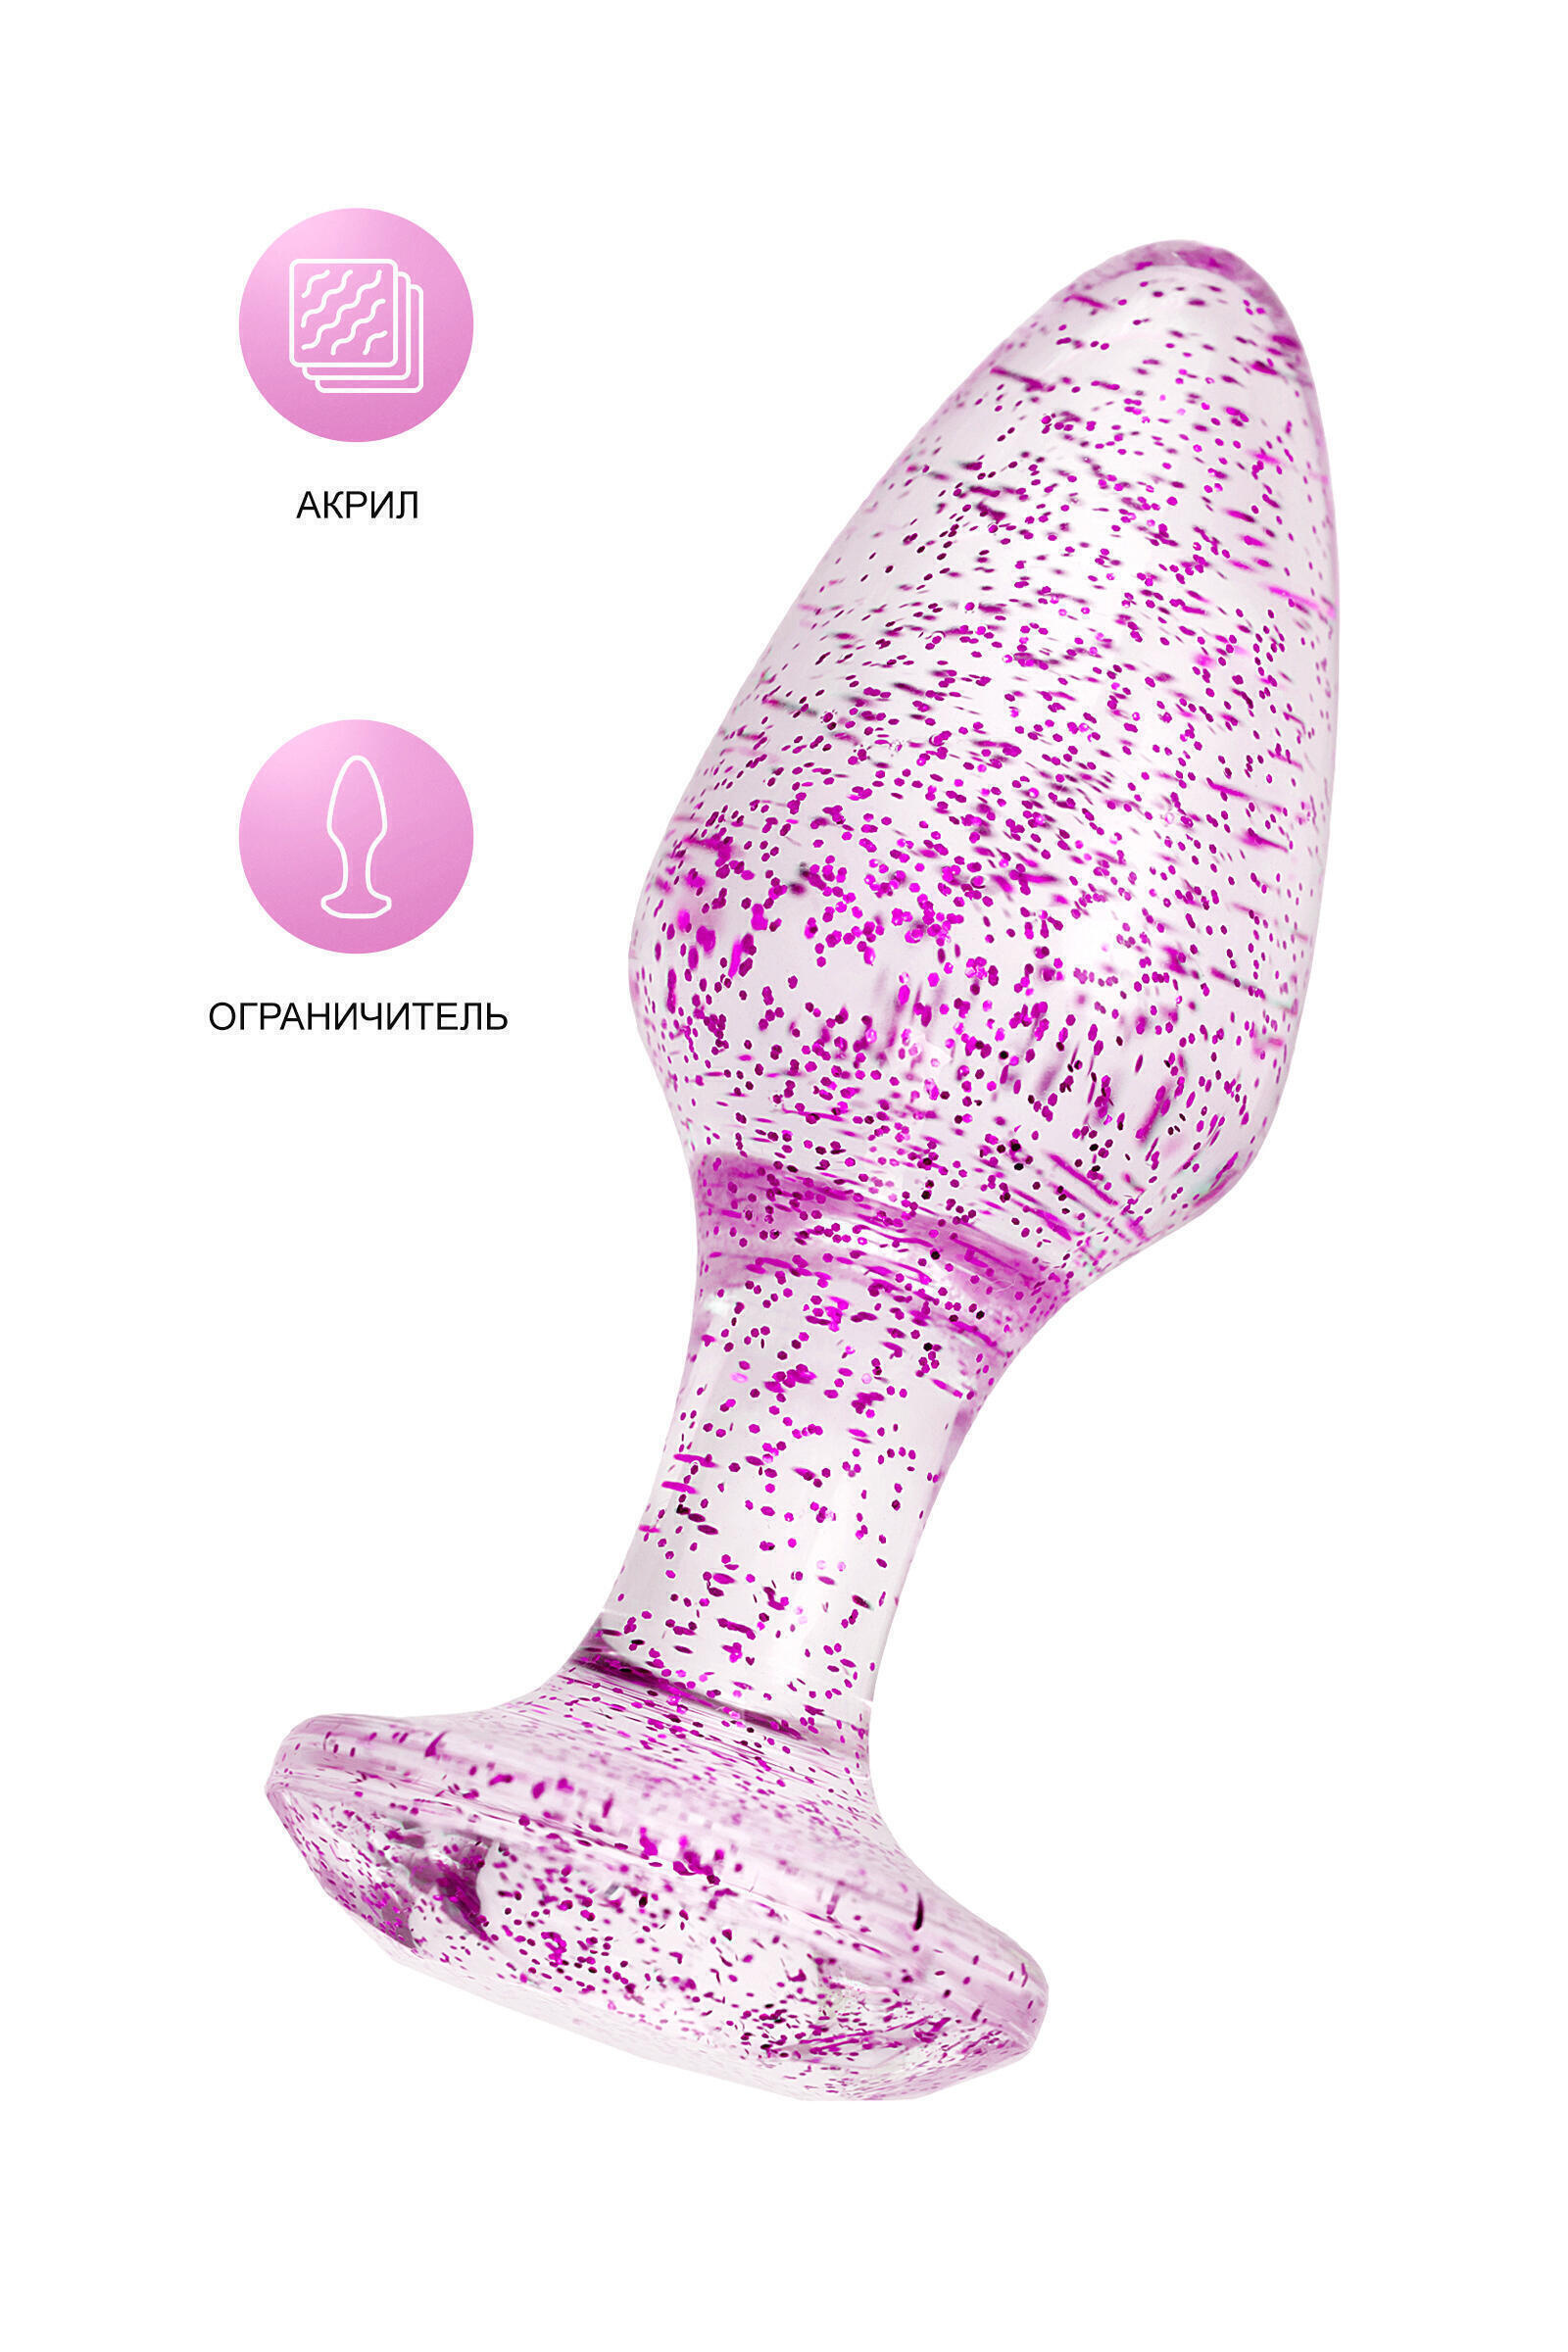 Акриловая анальная пробка Toyfa, фиолетовый